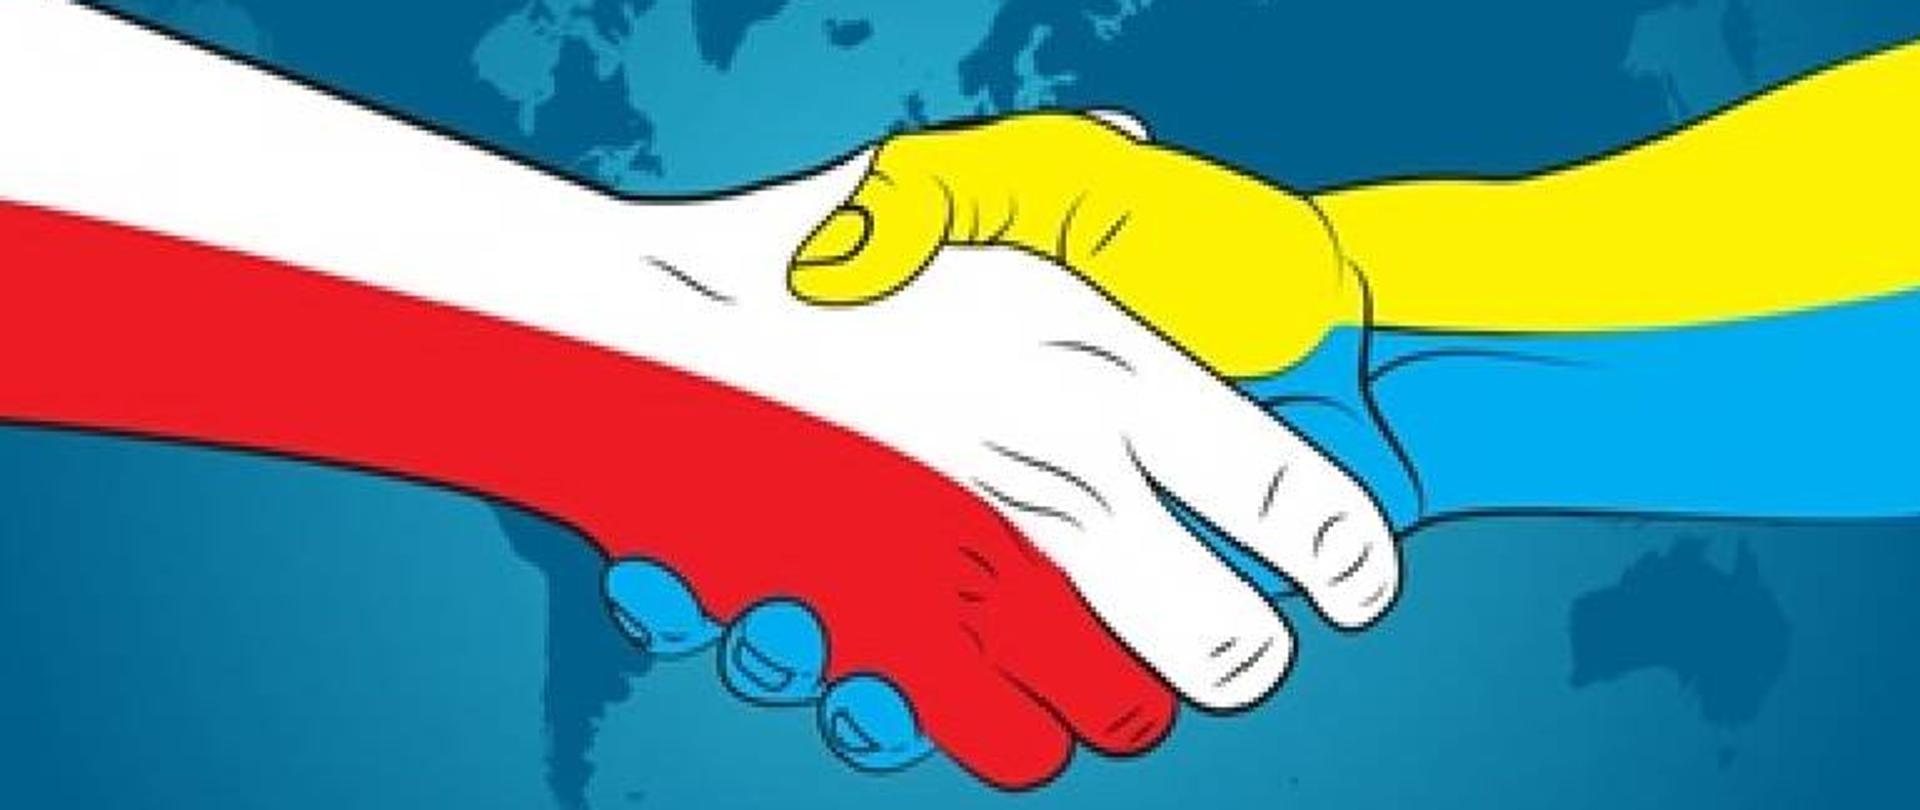 Zdjęcie przedstawiające uściśnięte w geście przyjaźni ręce - polską i ukraińską. Ręka polska w kolorze biało-czerwonym, ukraińska w kolorach żółto-niebieskim.